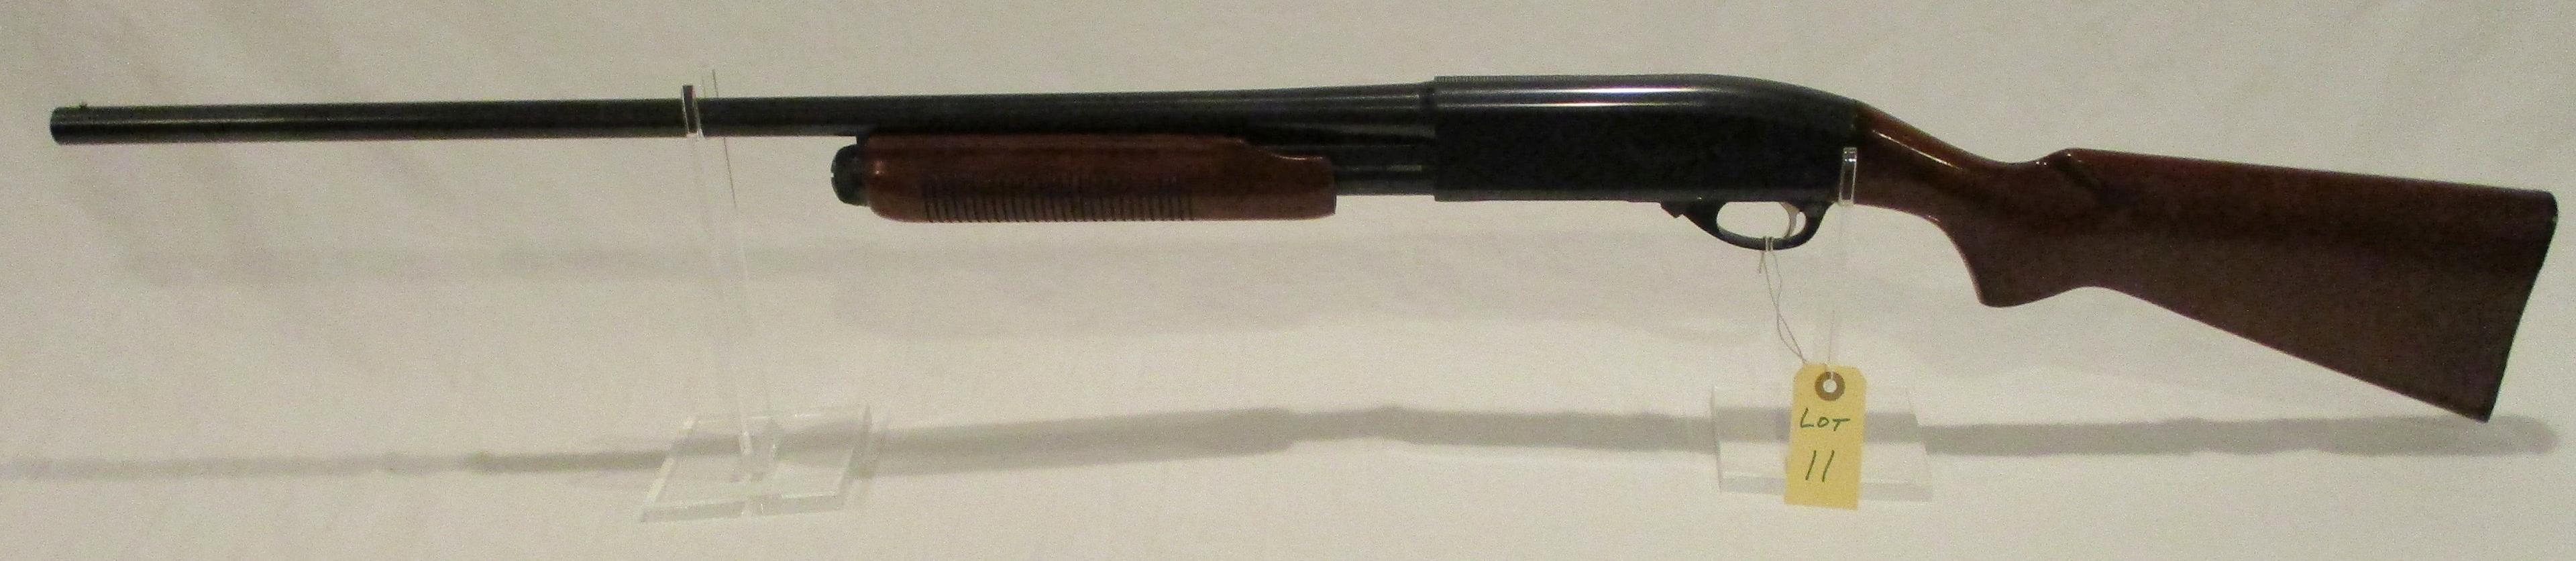 Remington 870 Wingmaster 12 Ga. Pump